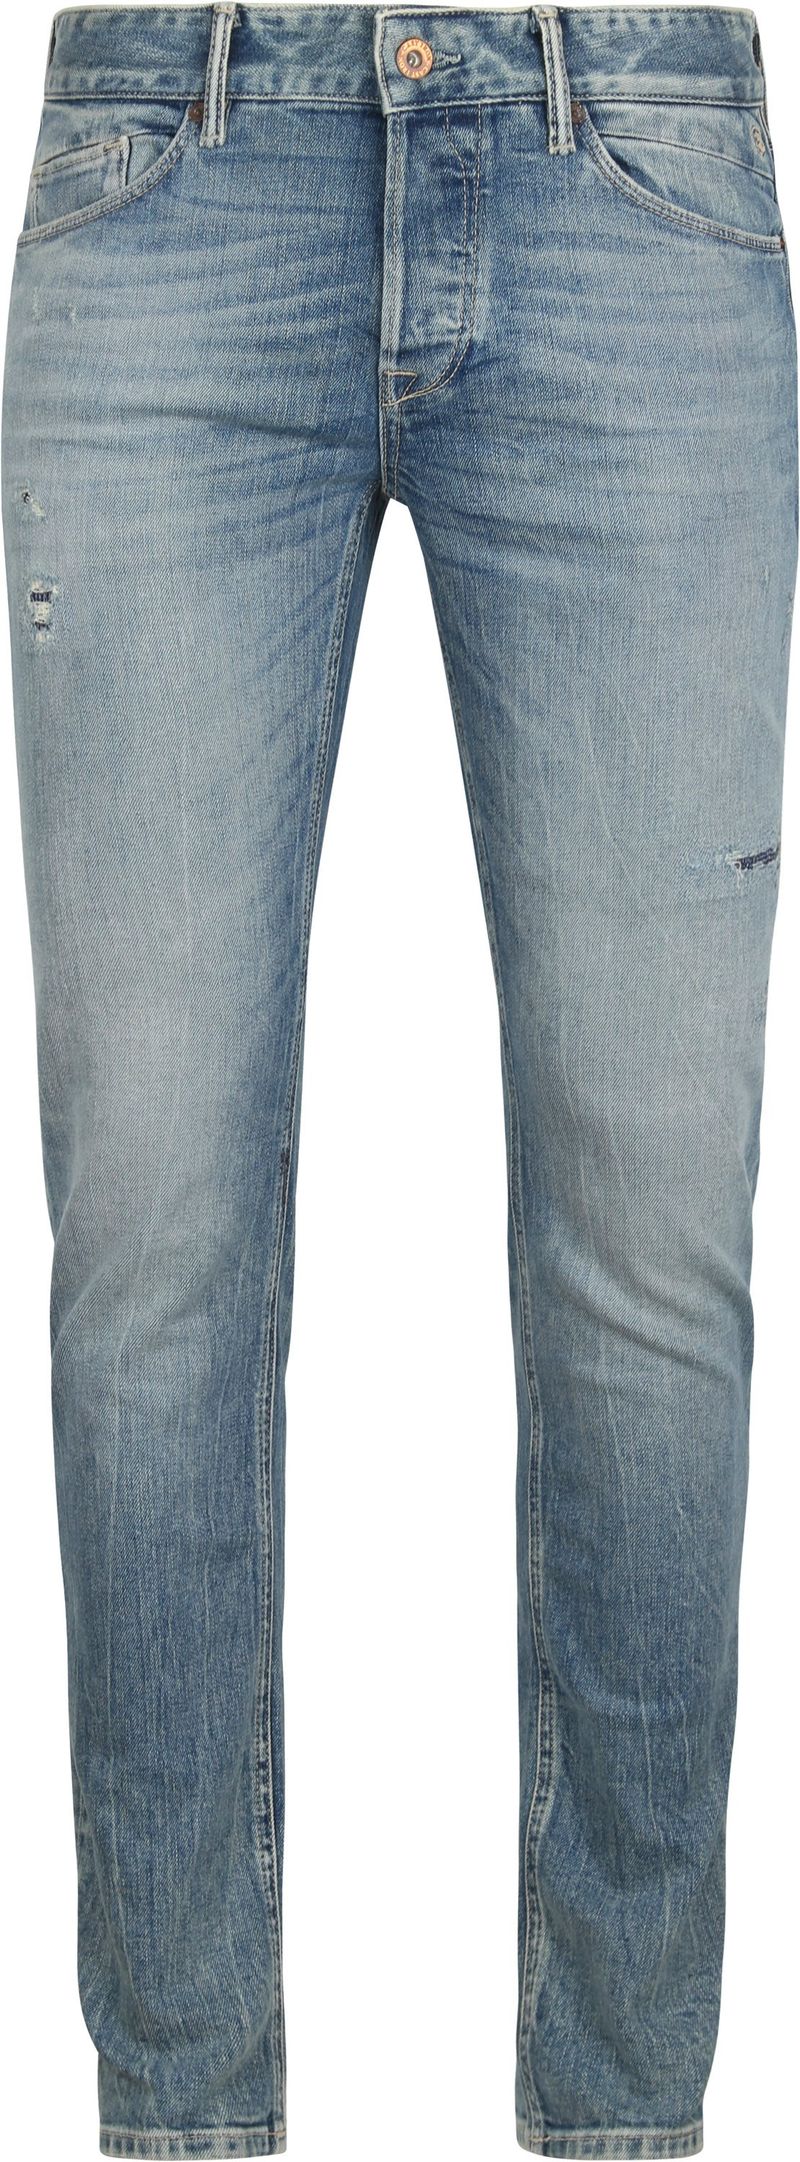 Cast Iron Riser Jeans Slim Soft Blau - Größe W 32 - L 34 von Cast Iron